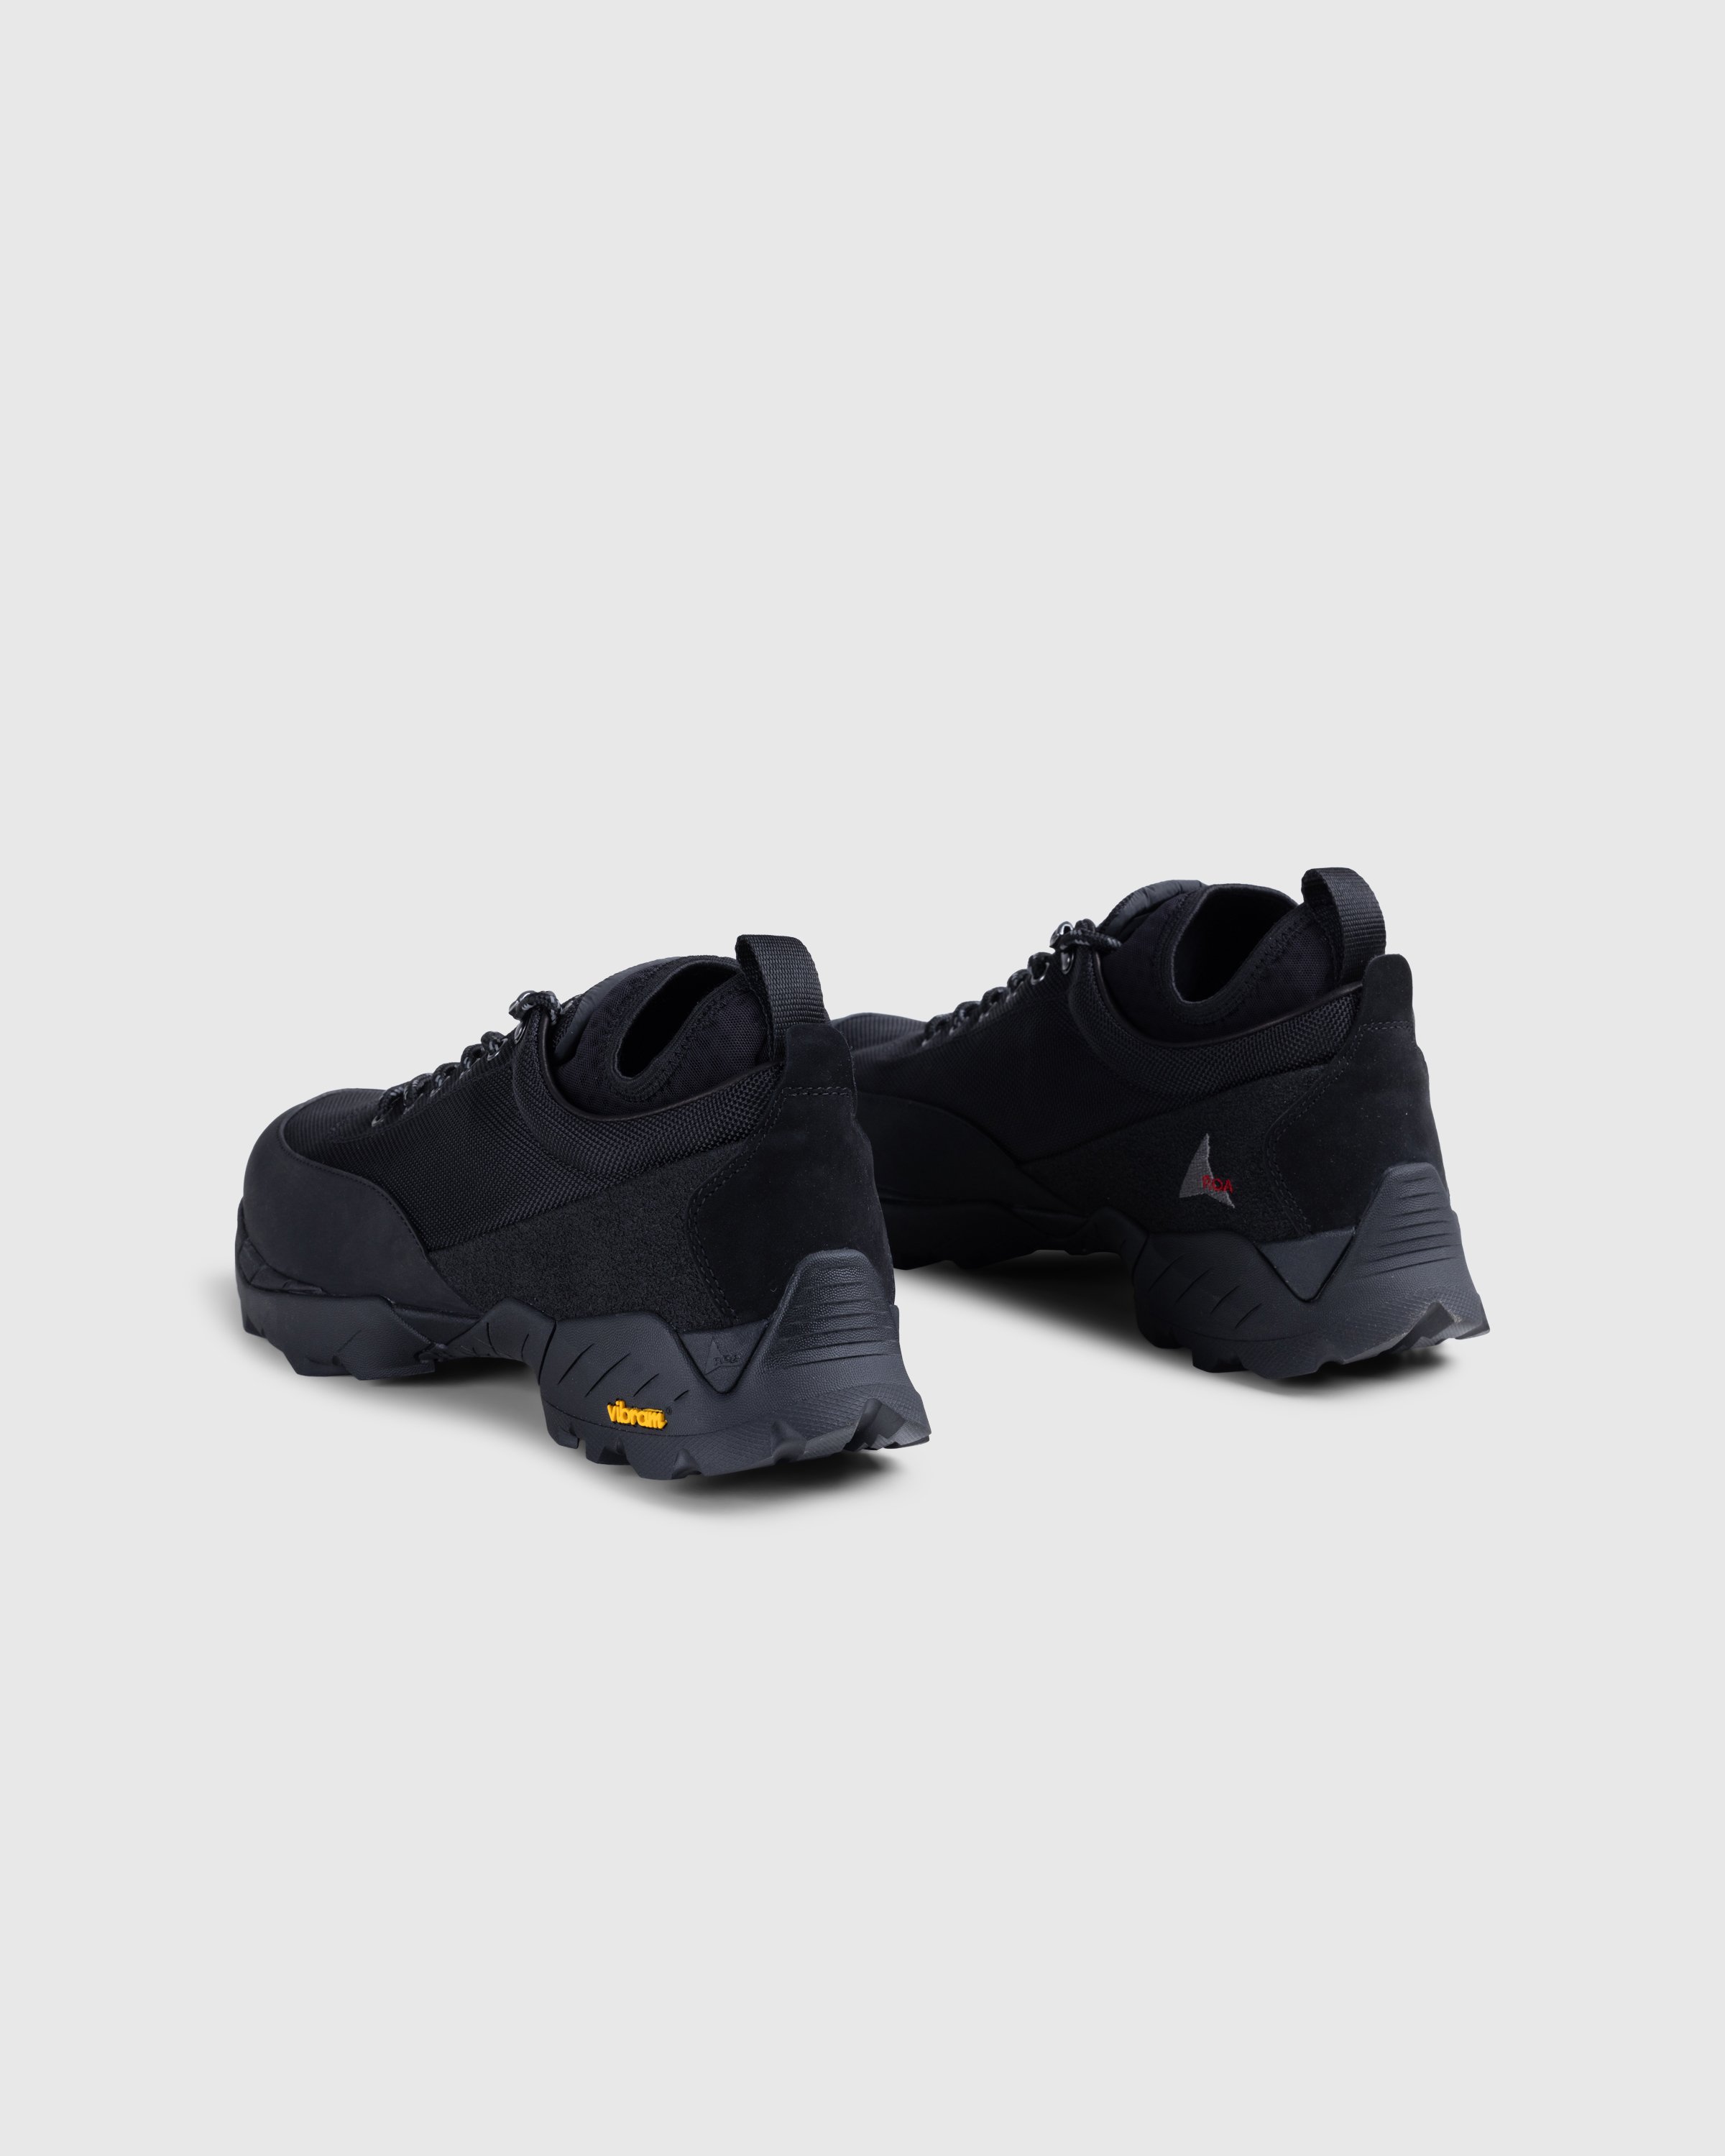 ROA - Neal Black - Footwear - Black - Image 4